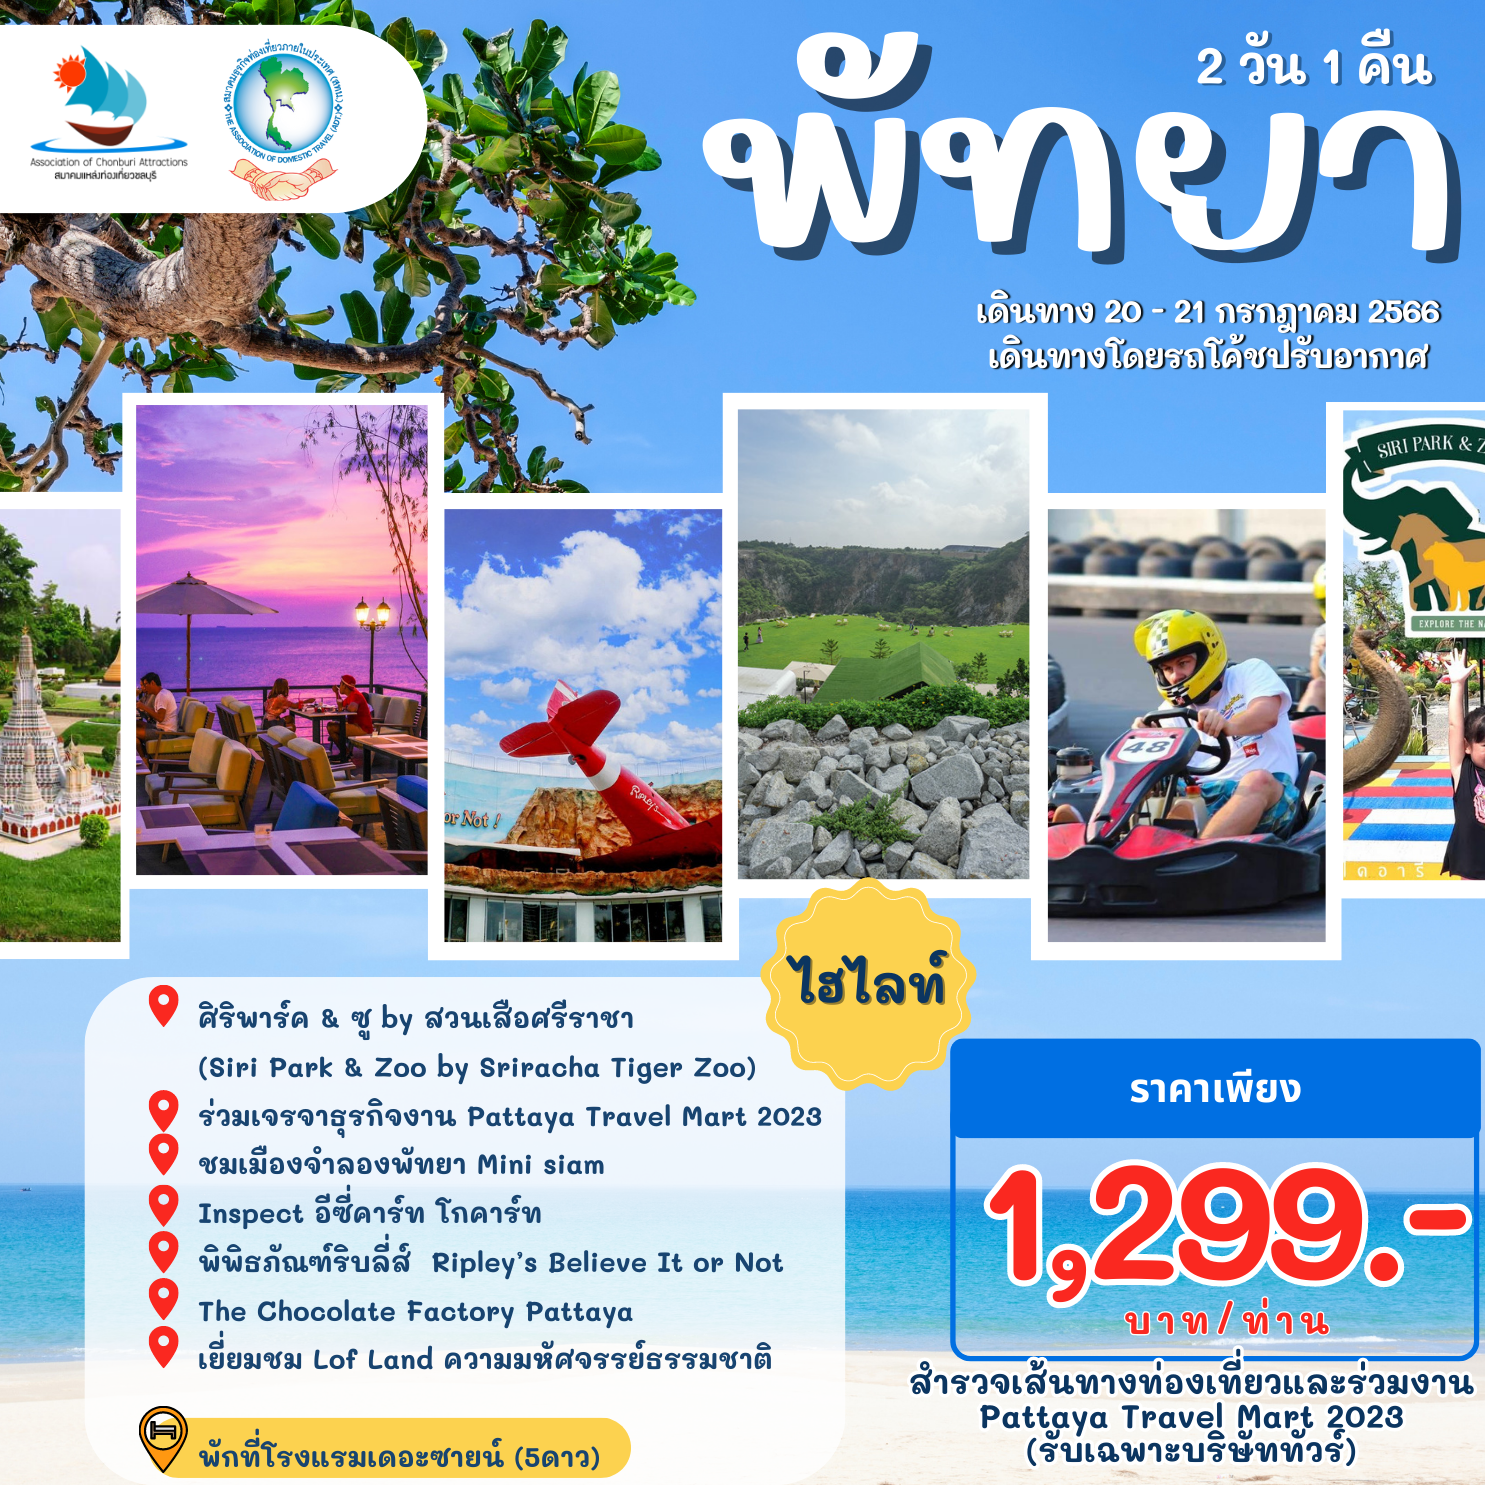 สทน. ขอเชิญสมาชิกสำรวจเส้นทางท่องเที่ยว และร่วมงาน Pattaya Travel Mart 2023